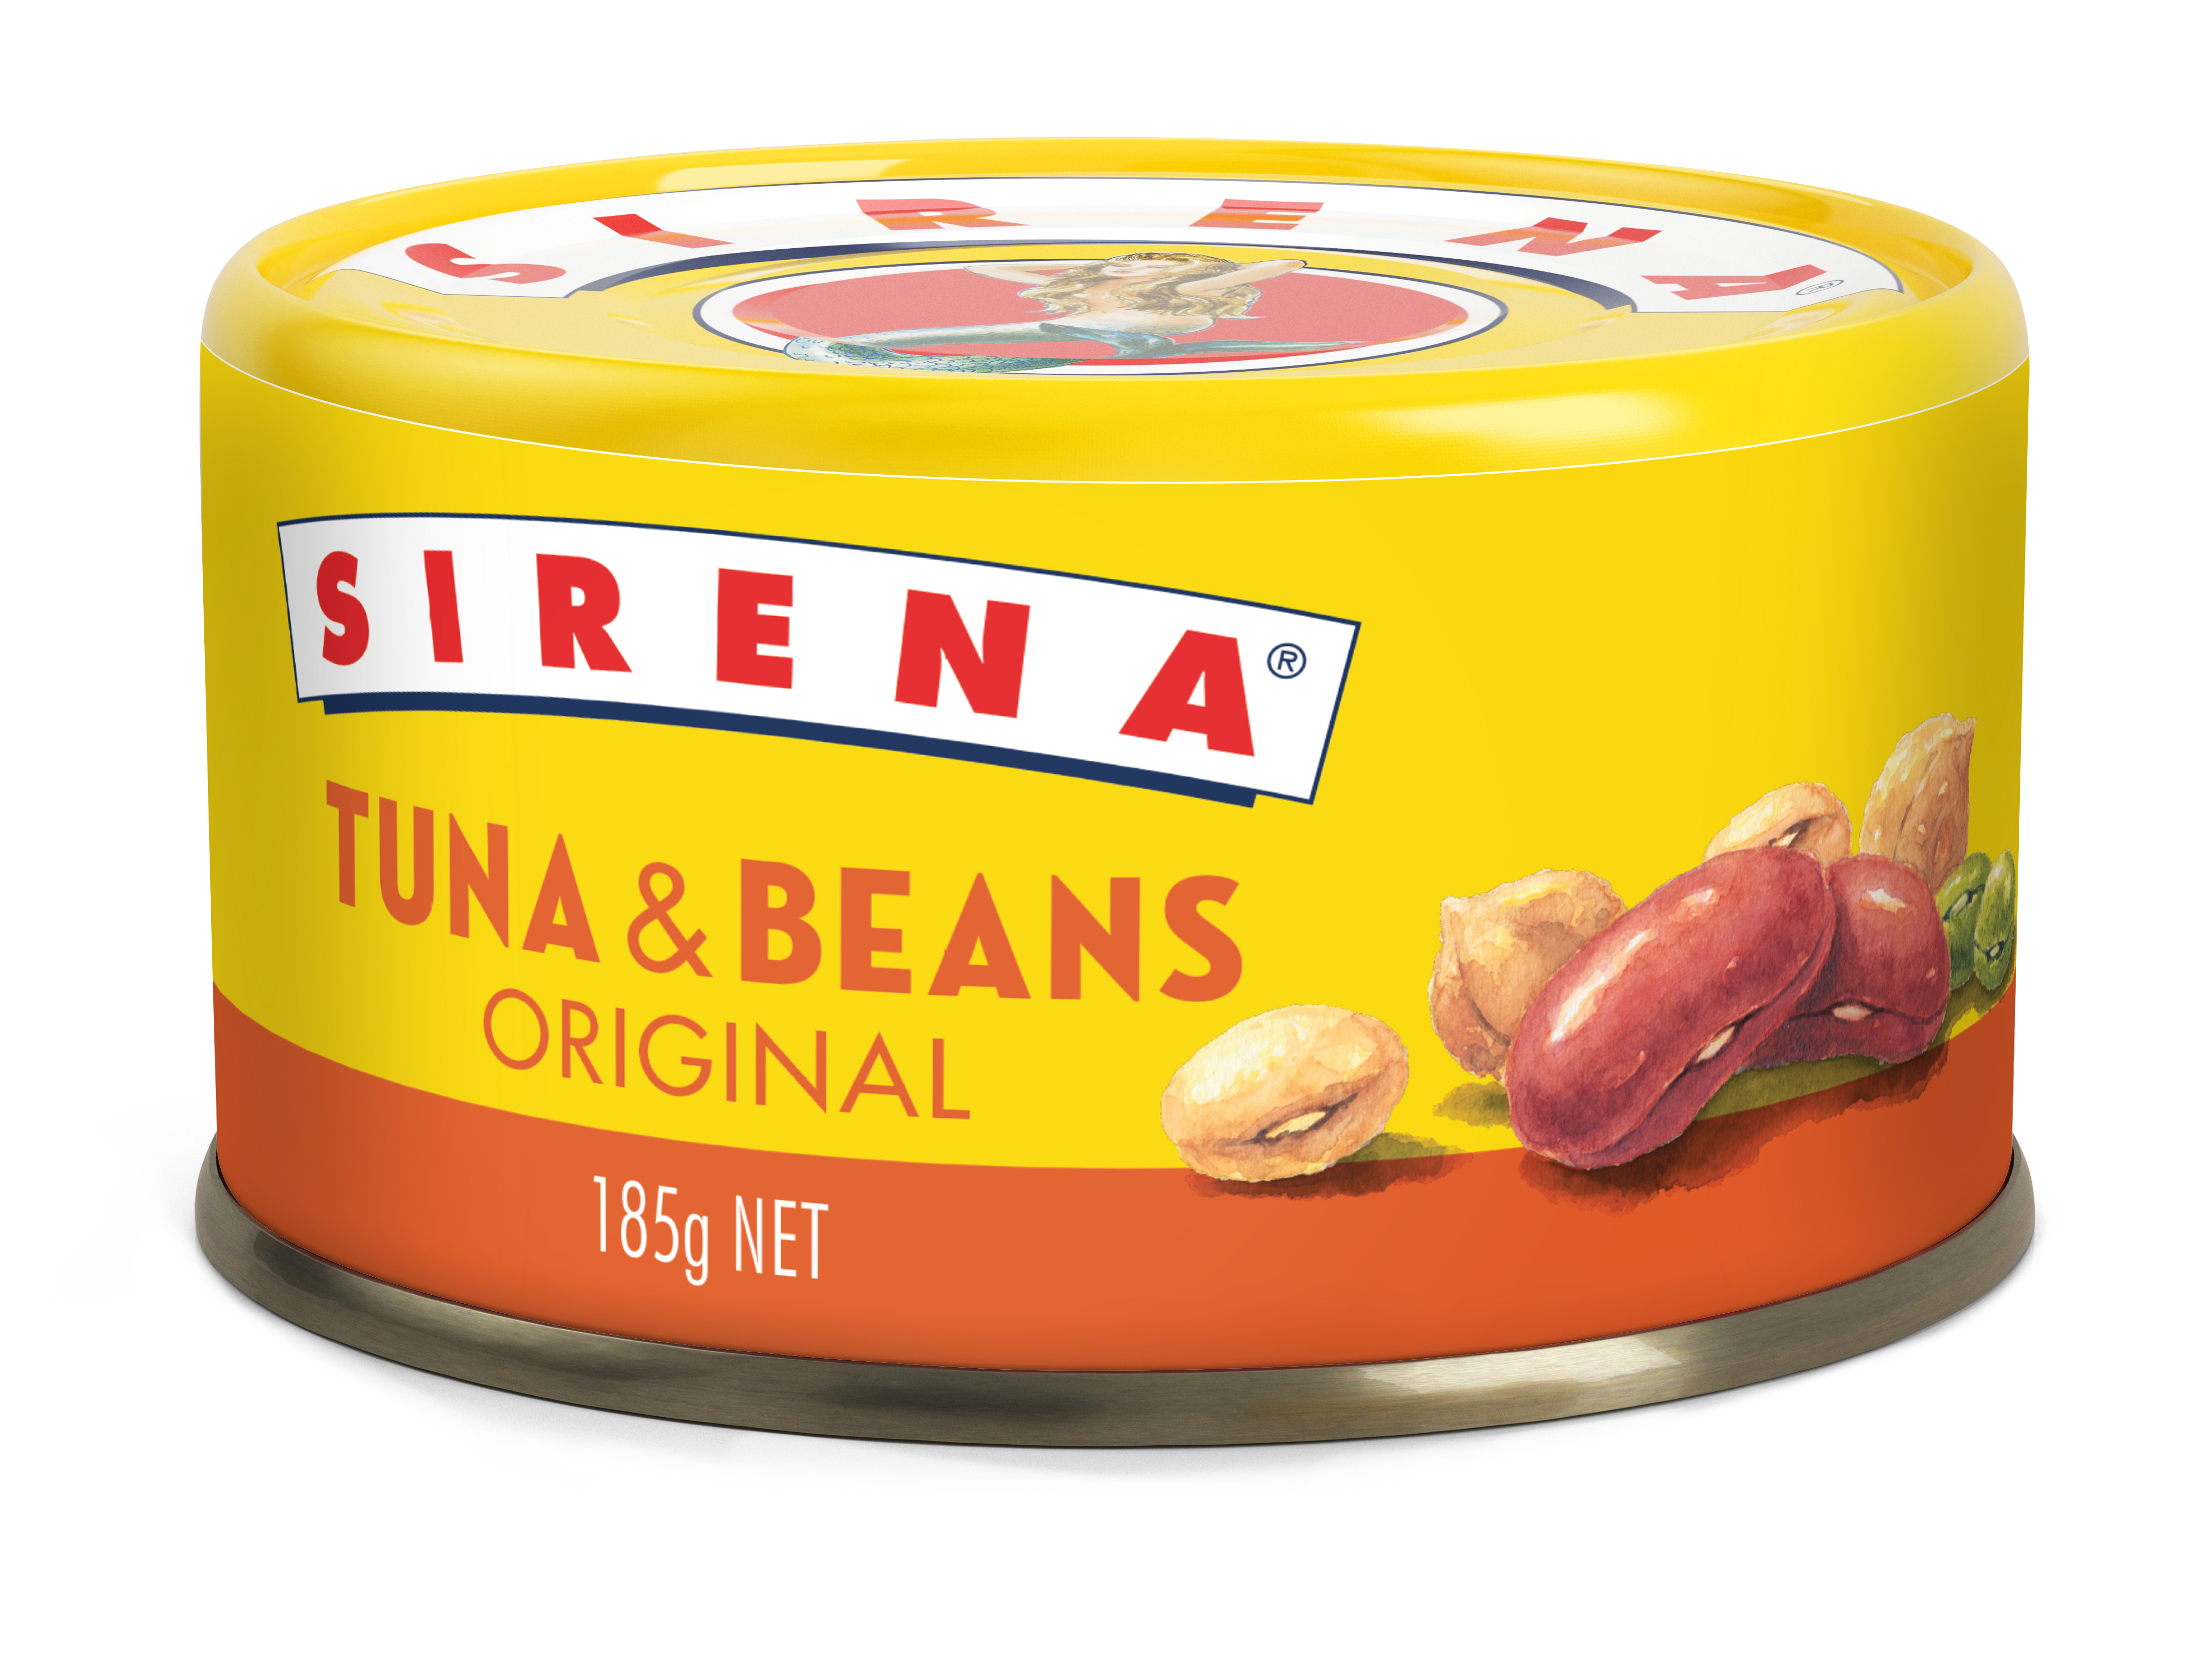 Sirena tuna and beans